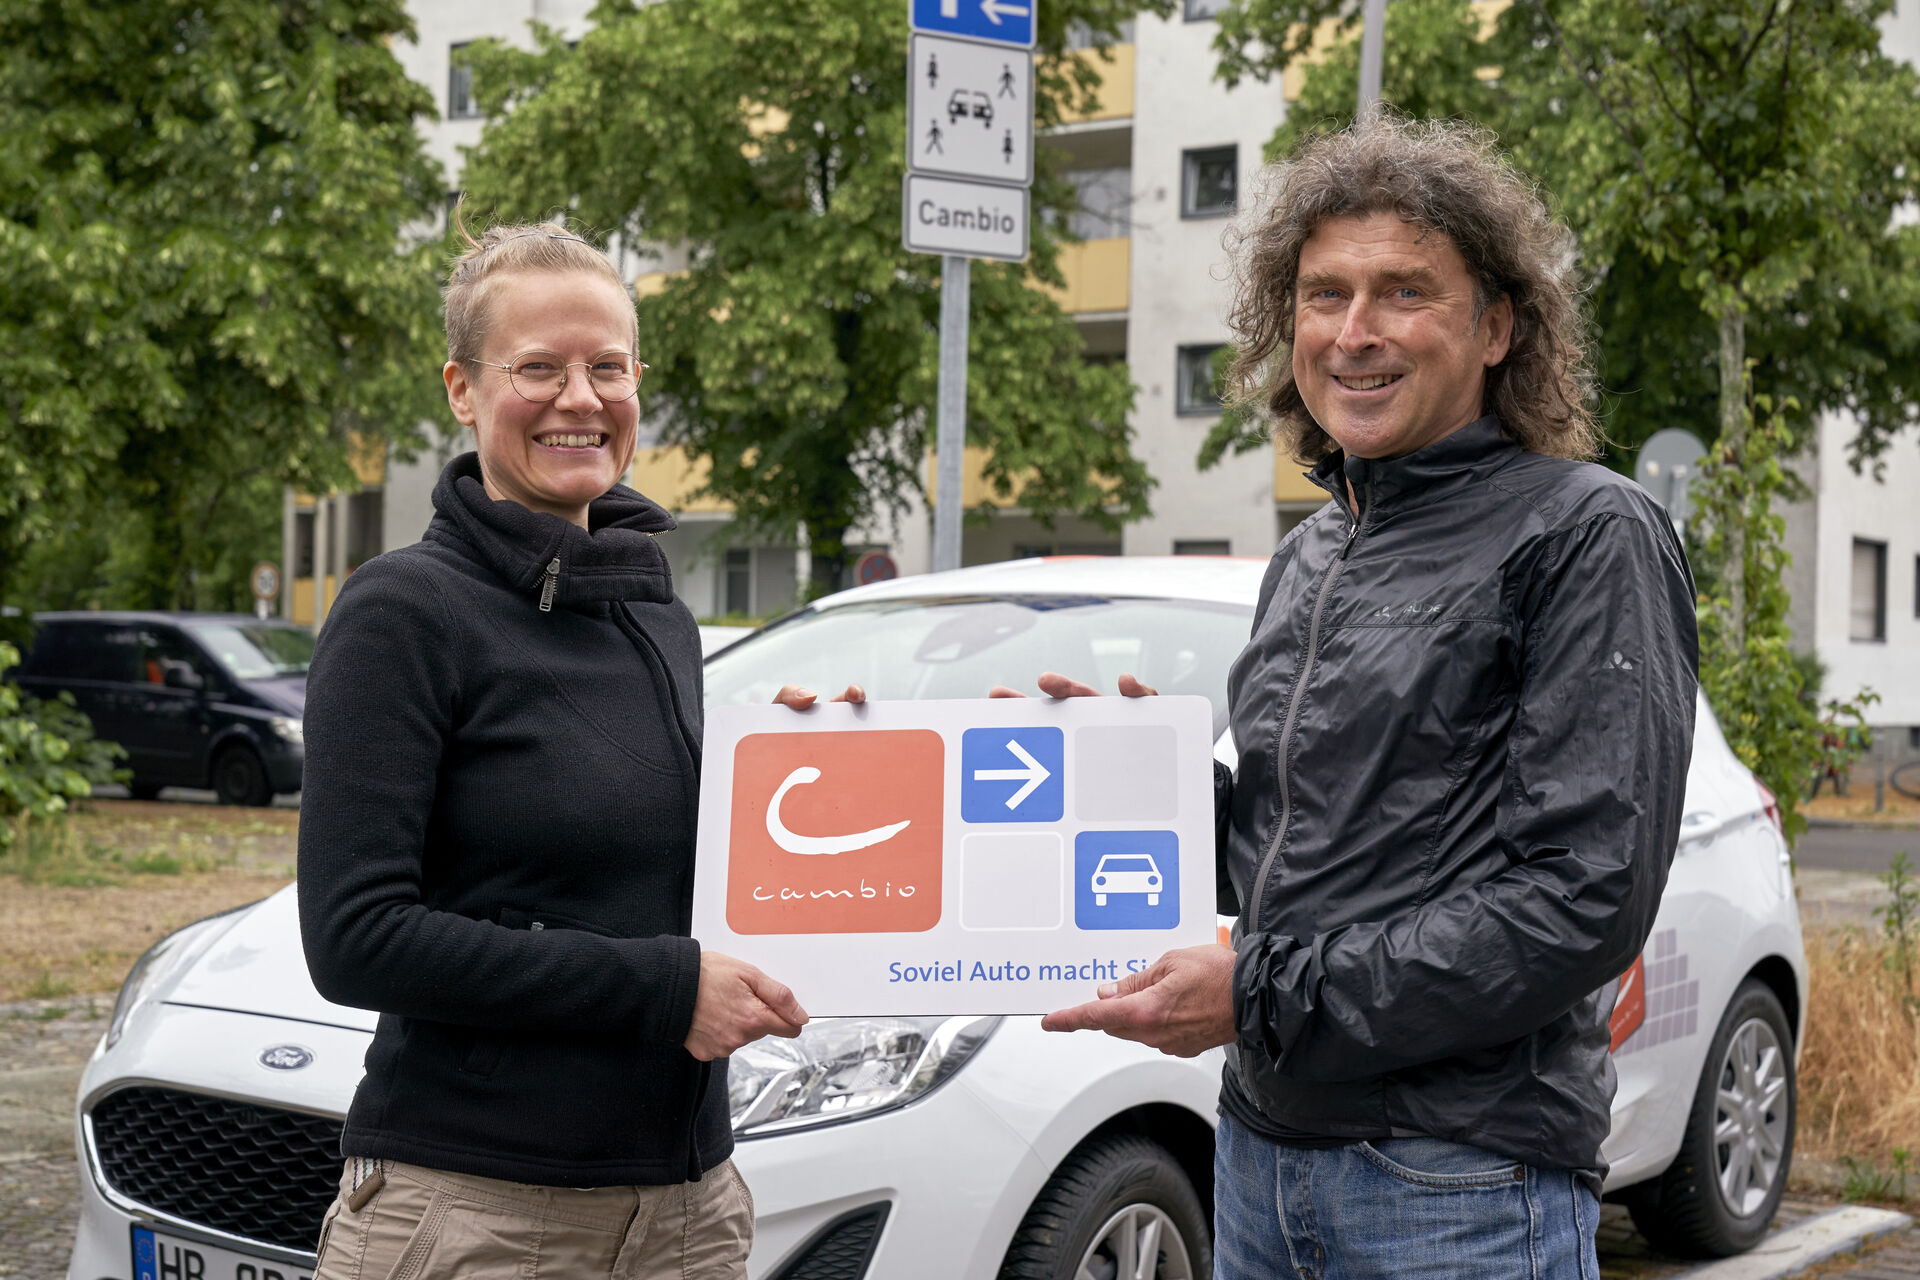 Bild von Helmut Gerlach und Alexandra Lermen vor einem Cambio-Auto, beide halten ein Schild mit dem Cambio-Logo